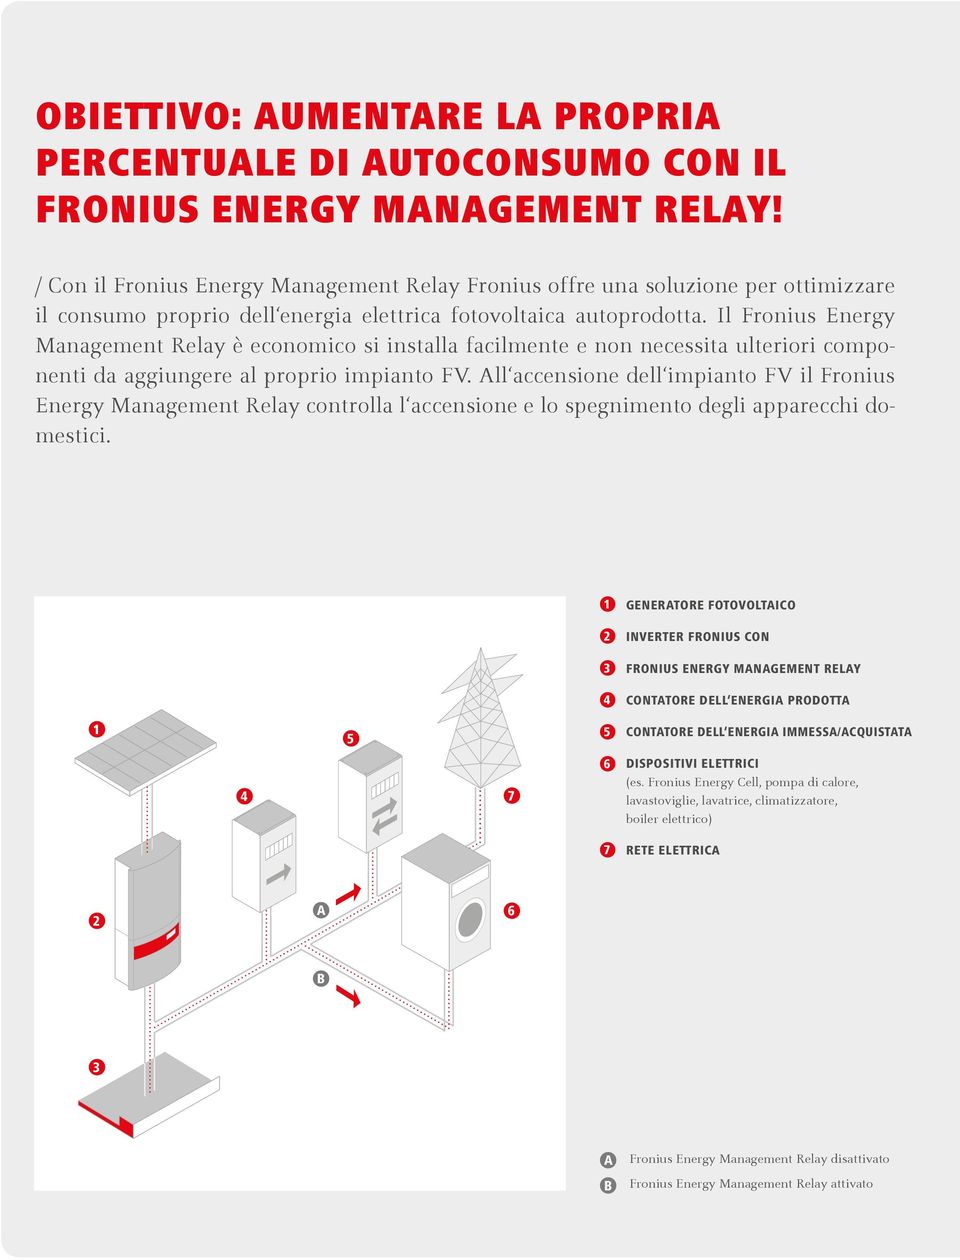 Il Fronius Energy Management Relay è economico si installa facilmente e non necessita ulteriori componenti da aggiungere al proprio impianto FV.